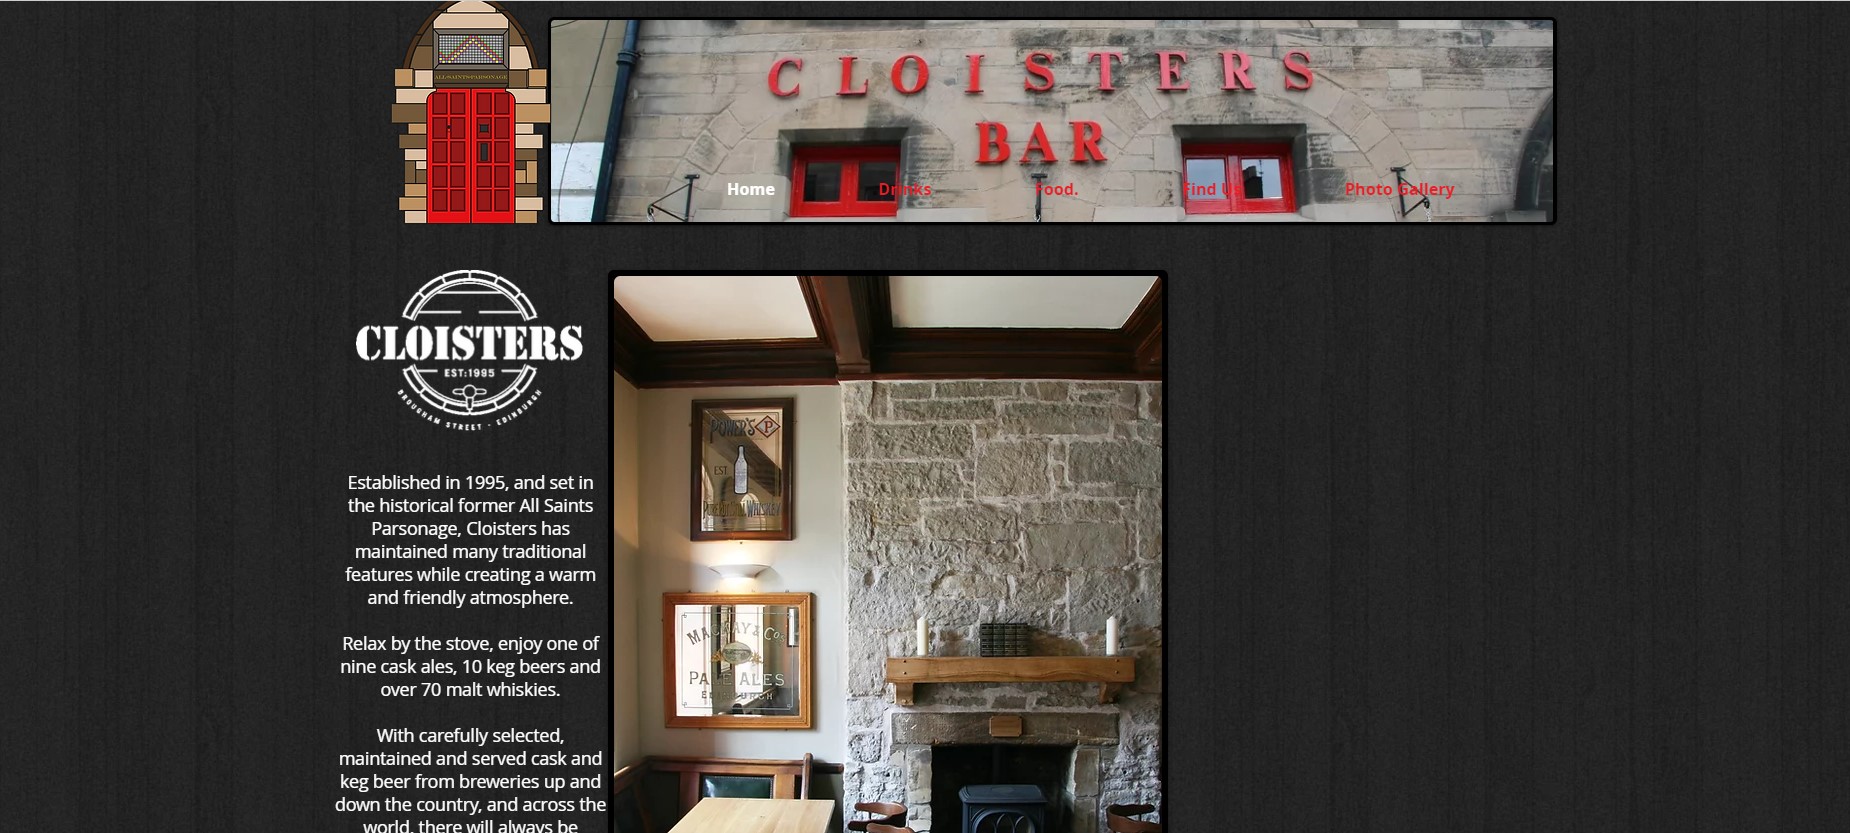 The Cloisters Bar